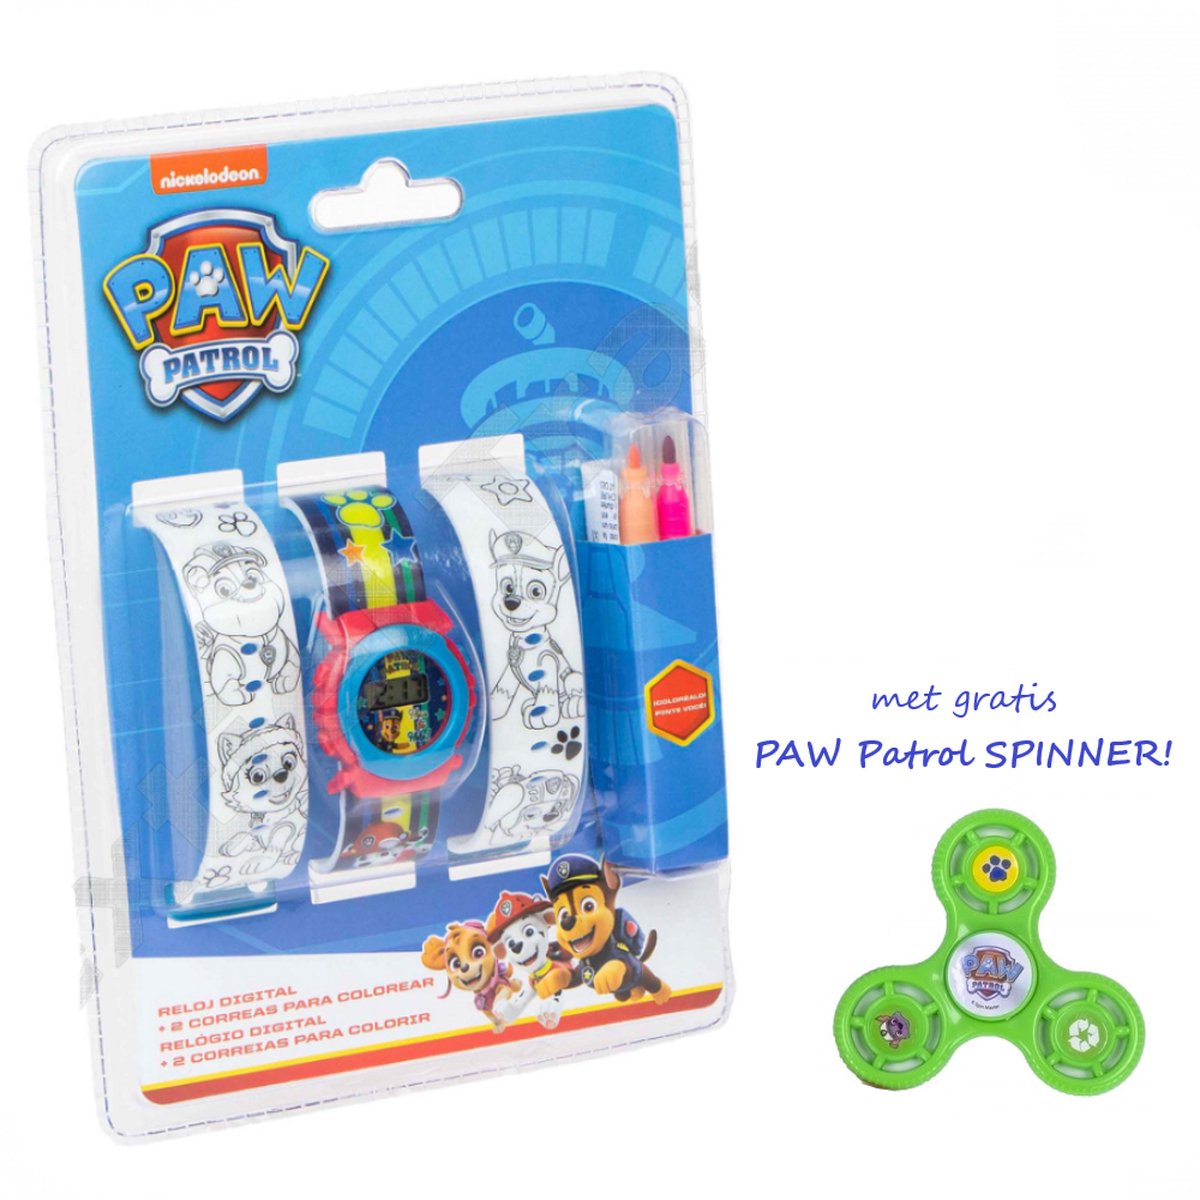 PAW Patrol Inkleubaar Horloge - Inclusief Stiften | Nu met gratis PAW Patrol Spinner!